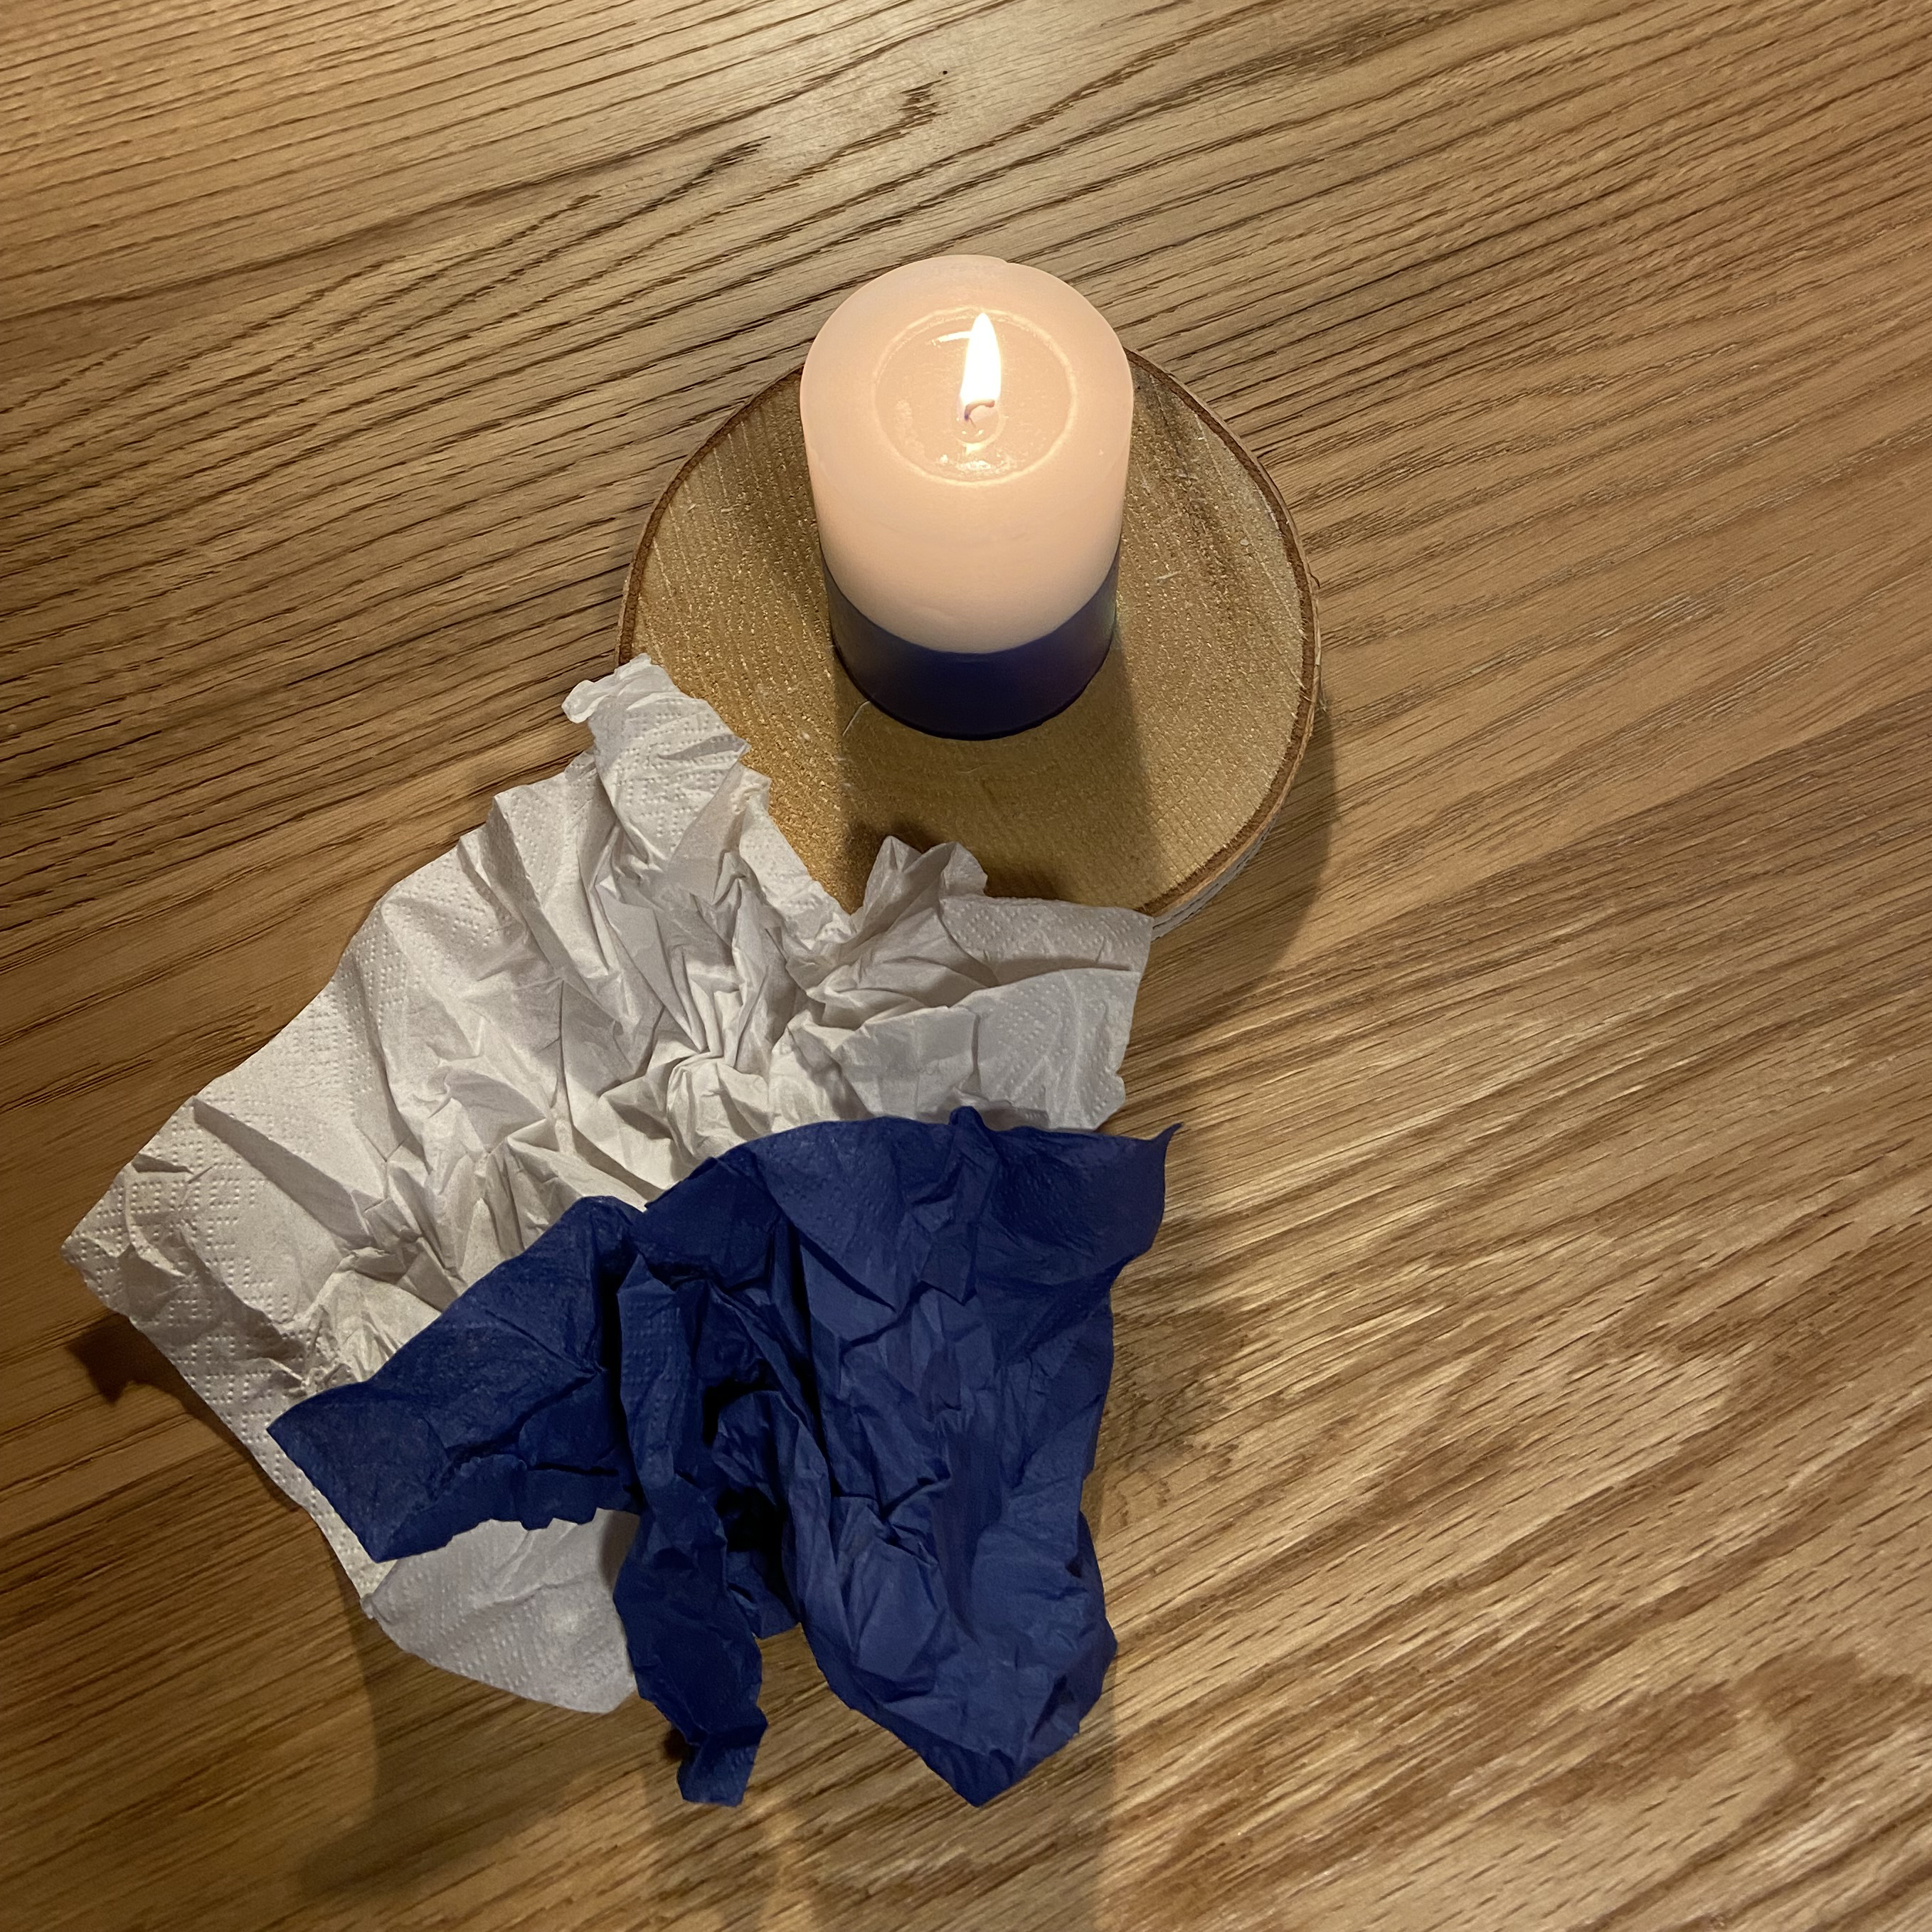 Sinivalkoinen ruokaservetti tammipöydällä, vieressä palaa sinivalkoinen kynttilä.